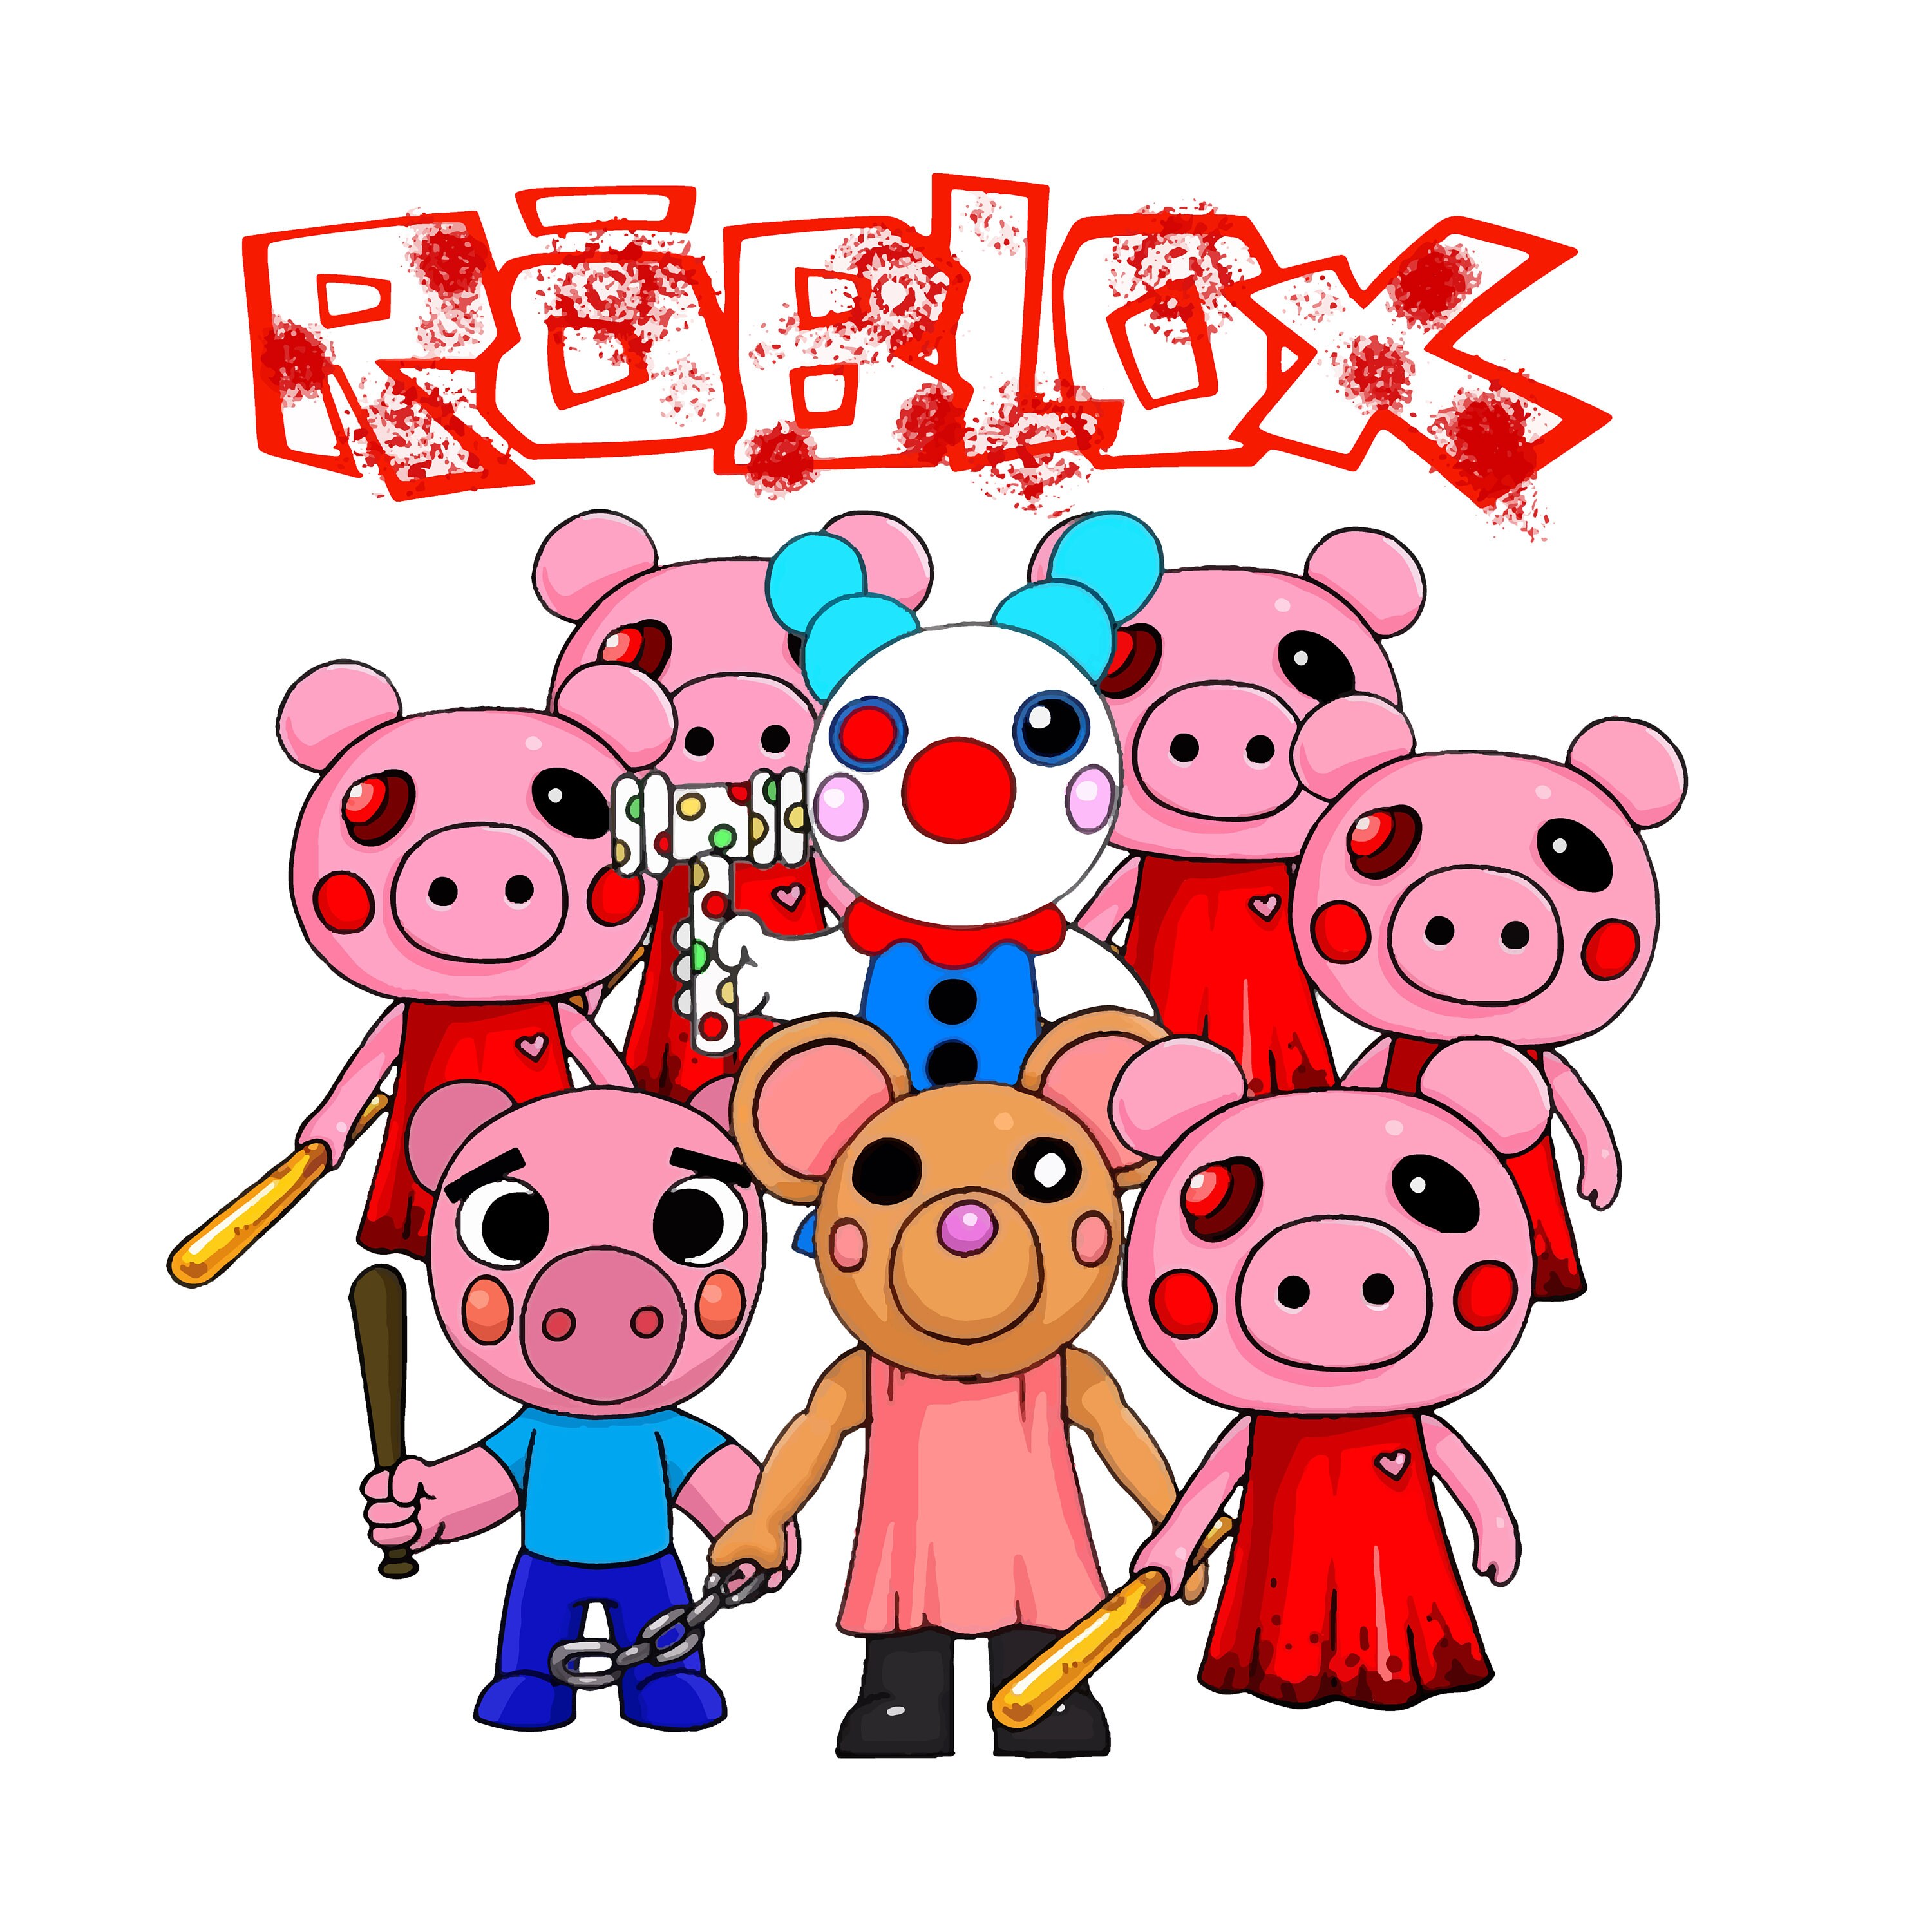 piggy logo roblox png cutout PNG & clipart images